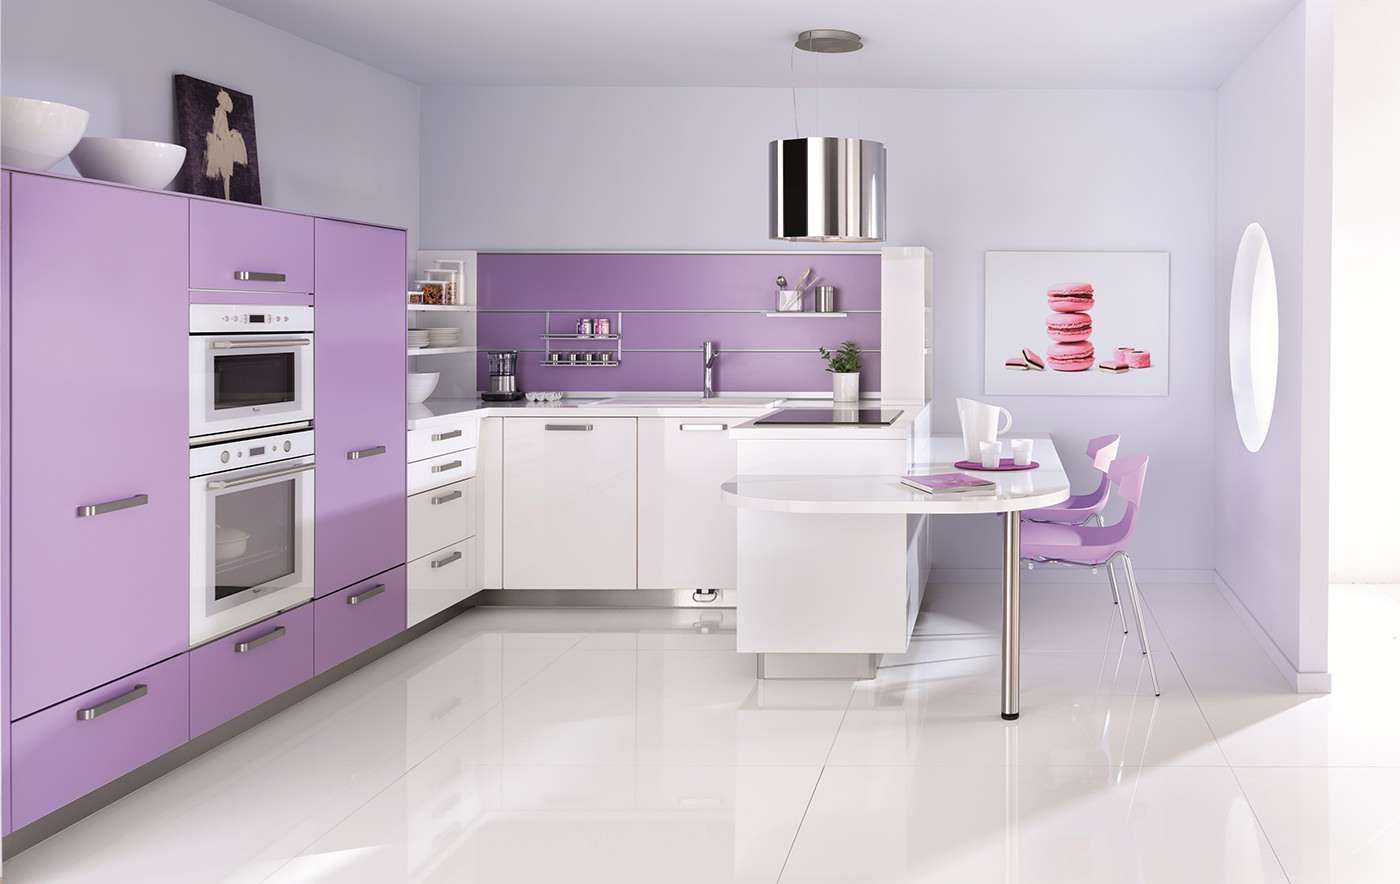  фиолетовая кухня минимализм